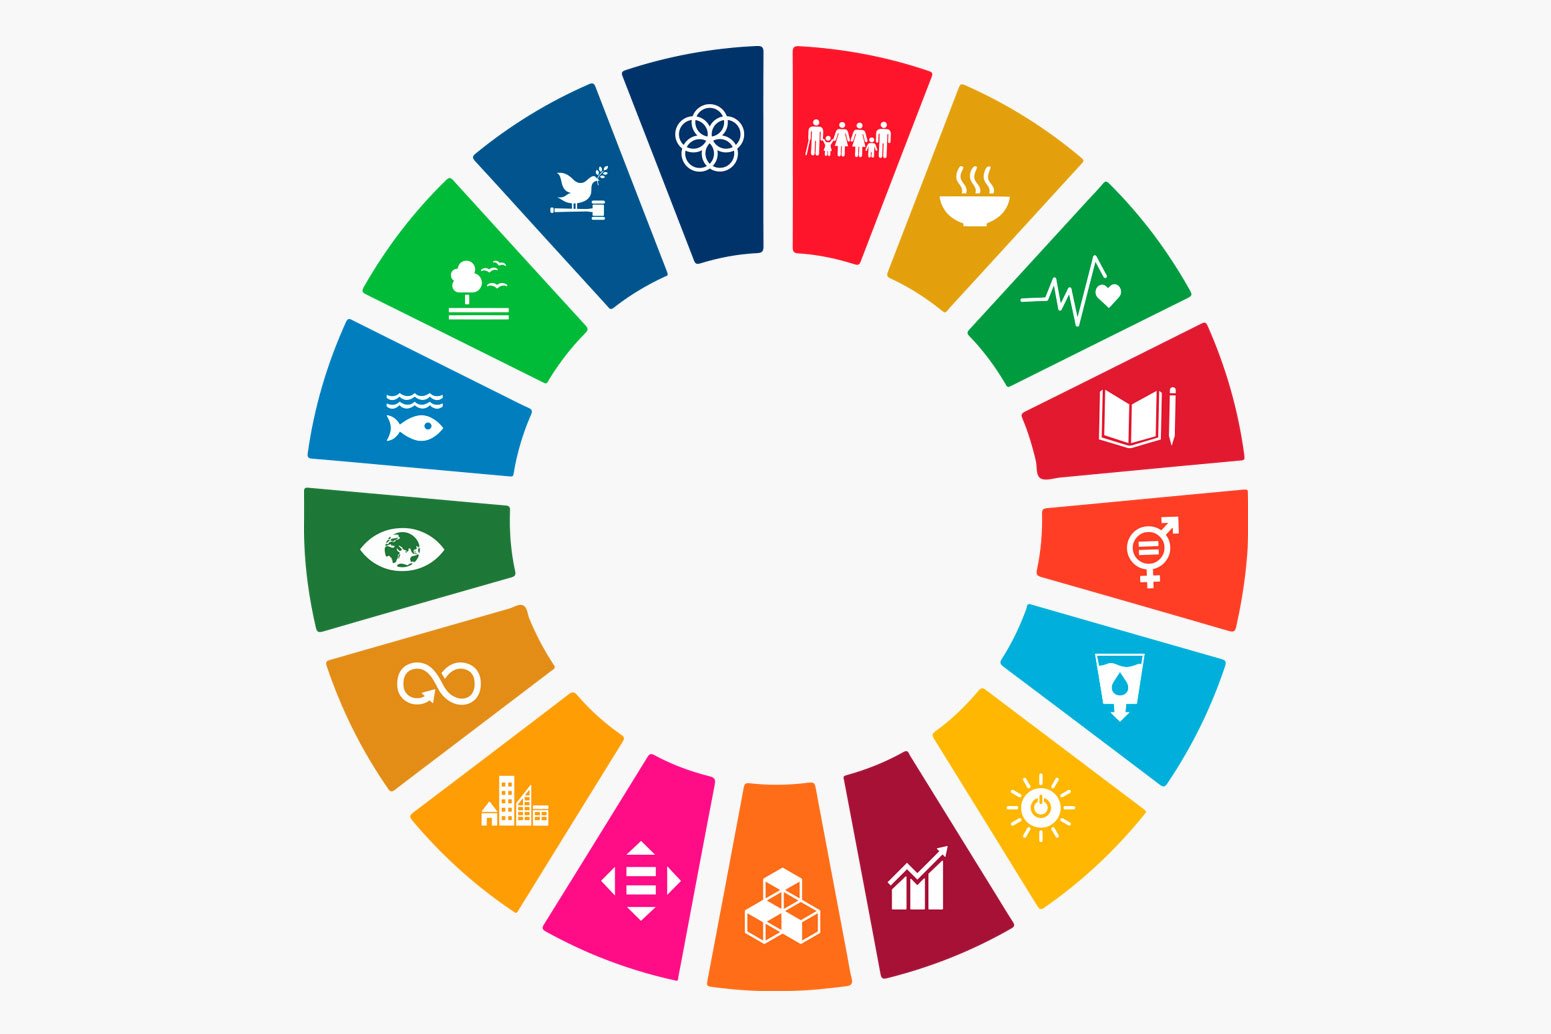 objetivos-desarrollo-sostenible-circulo.jpg